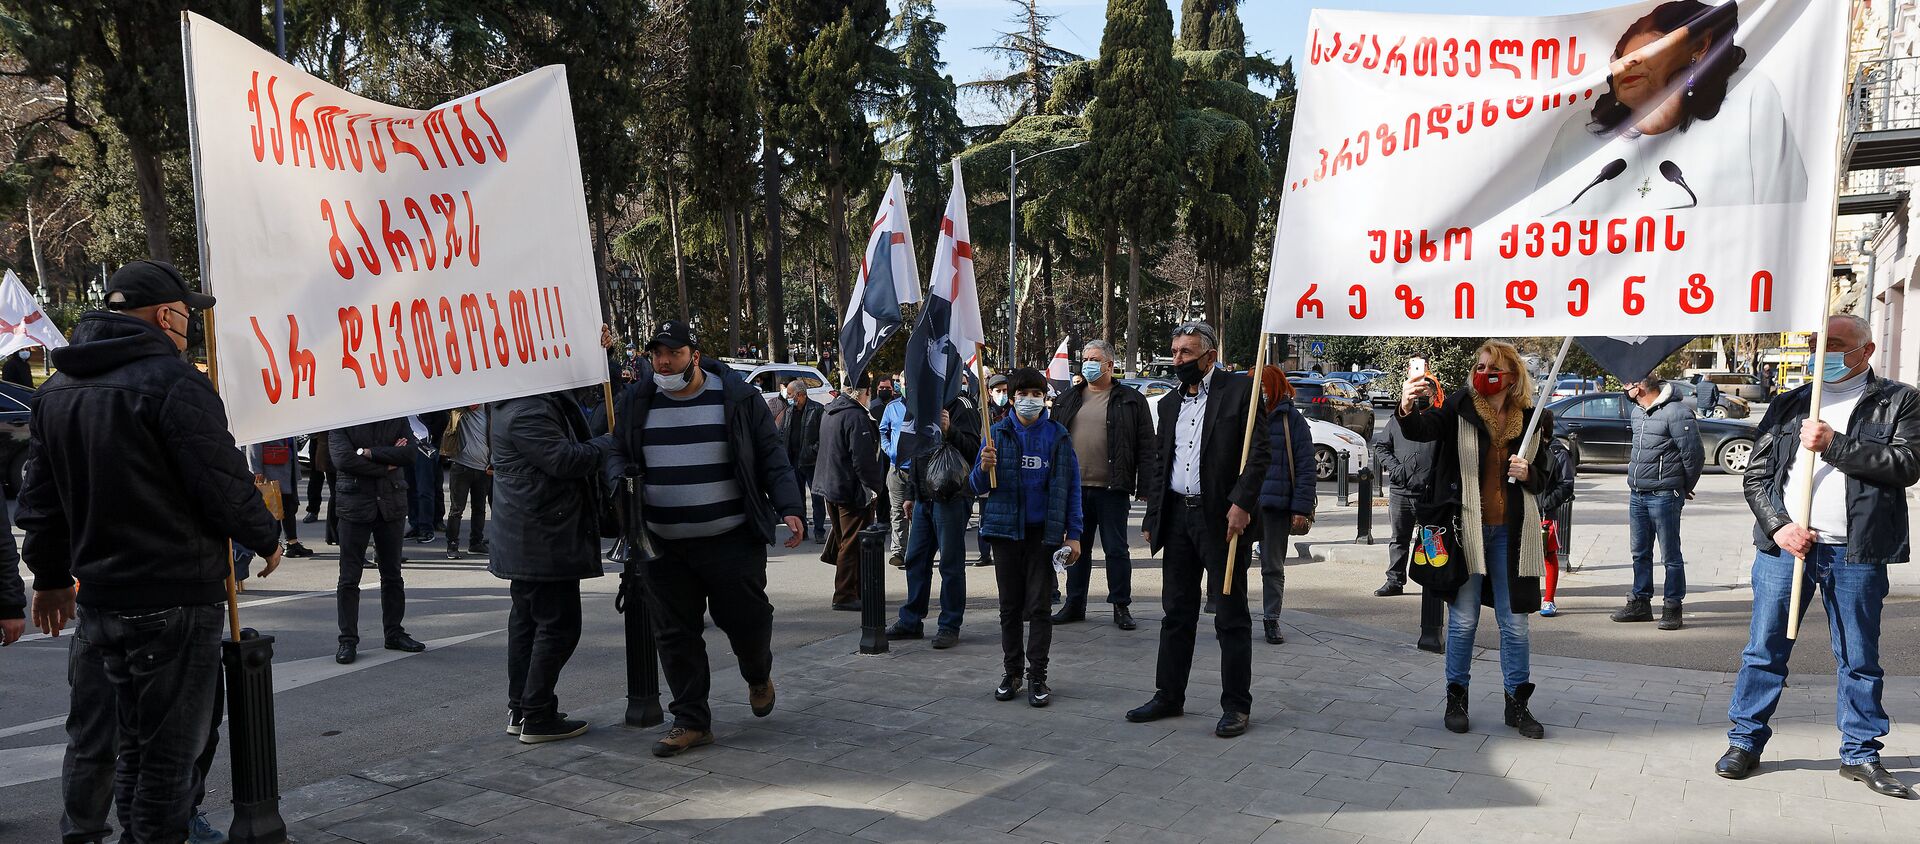 “Грузинский марш” провел акцию протеста у резиденции президента - видео - Sputnik Грузия, 1920, 03.02.2021